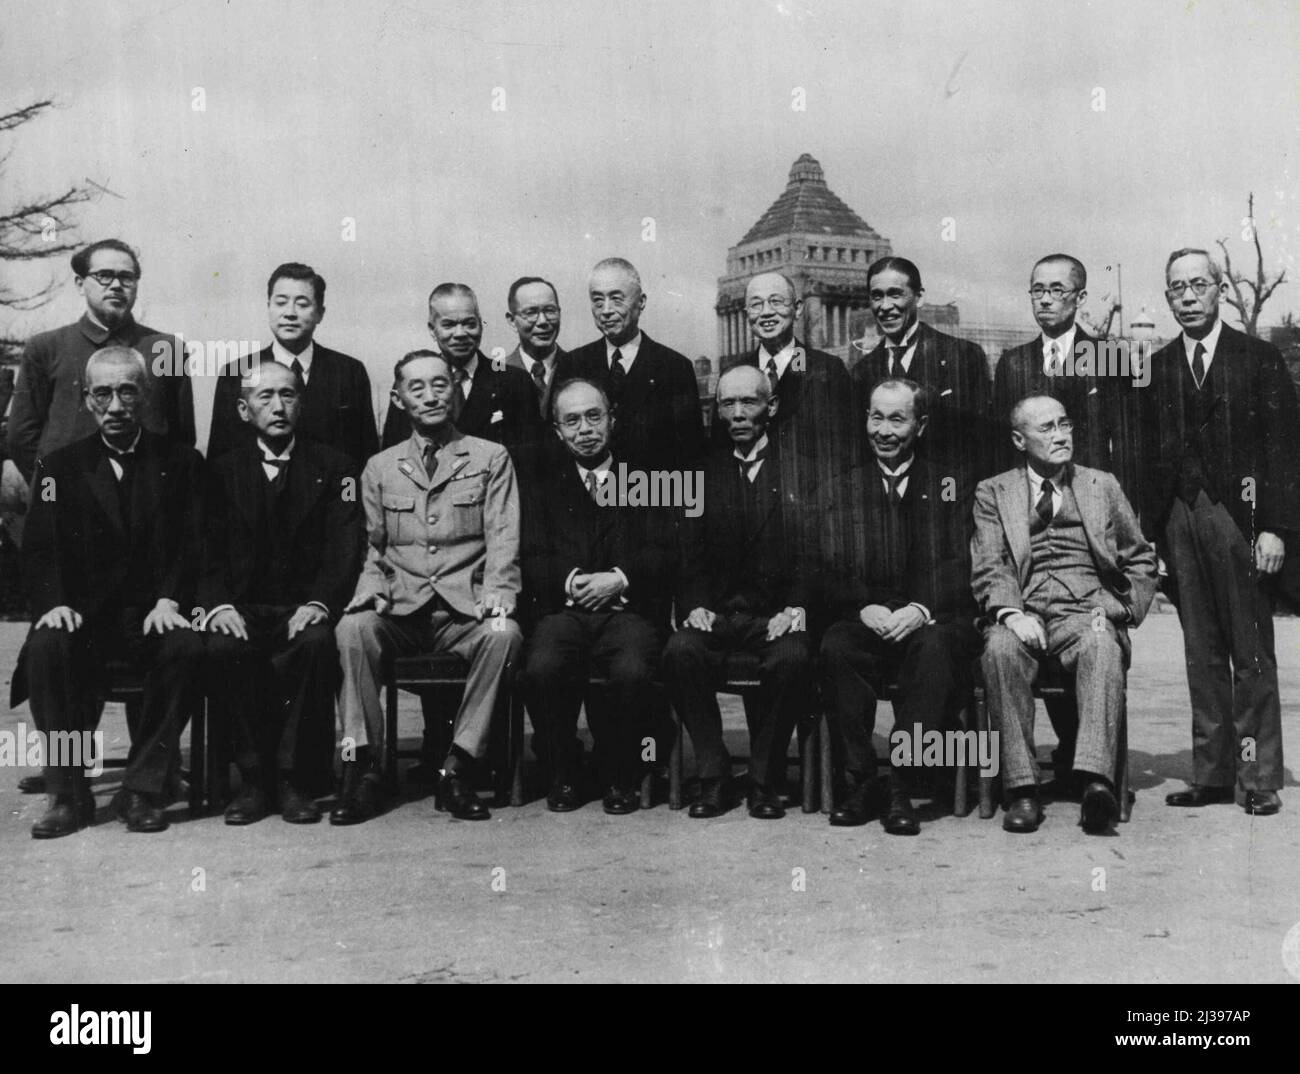 Nuovo Gabinetto del Giappone - Barone Kijuro Shidehara, nuovo primo Ministro del Giappone, e il suo nuovo Gabinetto, posano per la loro foto fuori dell'edificio della Dieta Imperiale, Tokyo. Ottobre 12, 1945. (Foto di U.S. Signal Corps Photo). Foto Stock